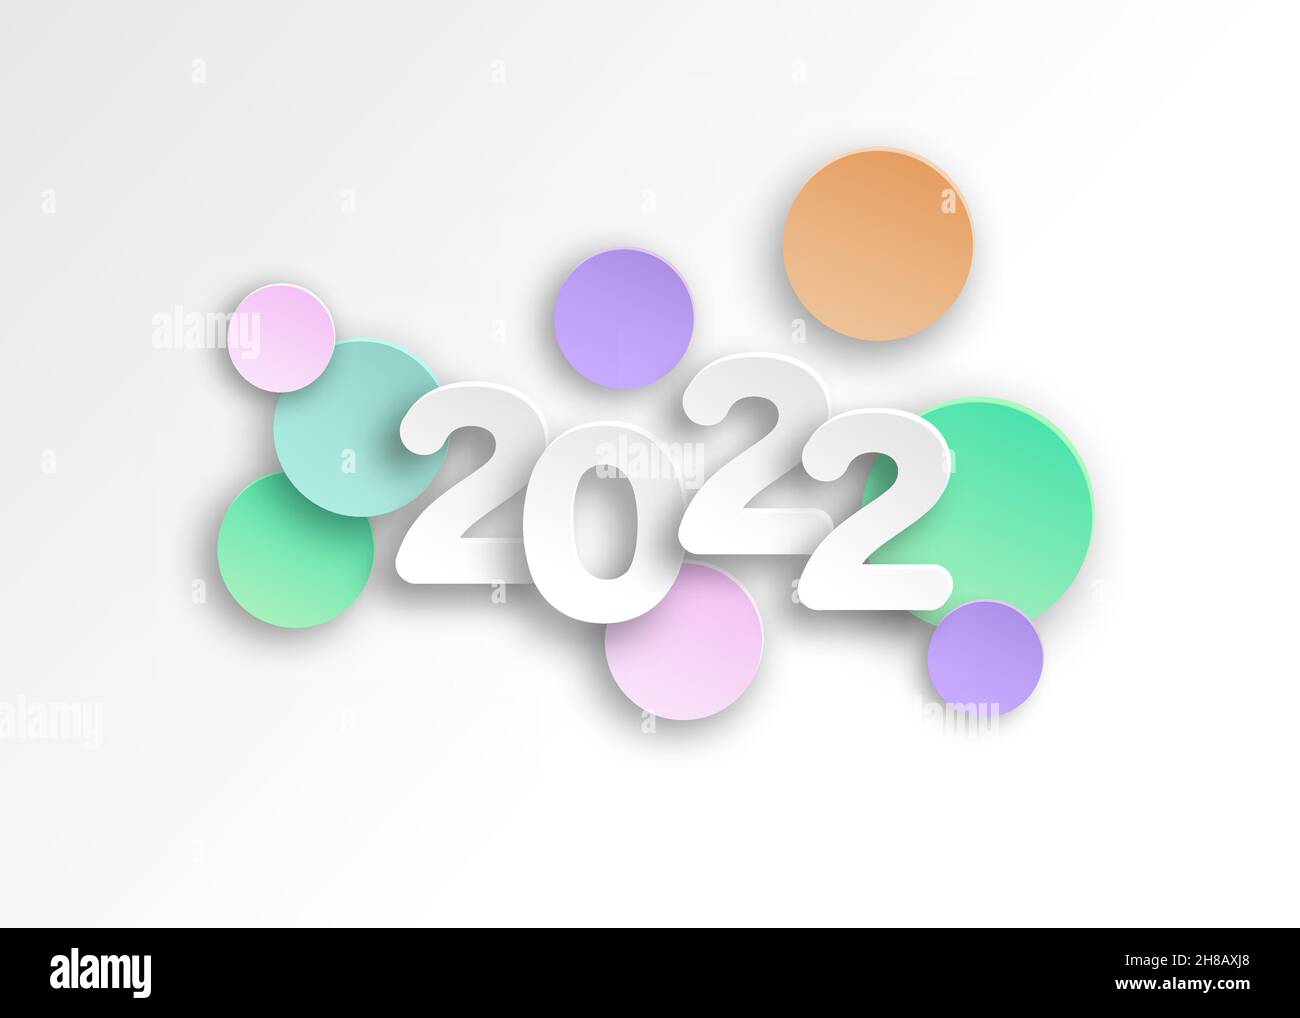 Neues Jahr 2022 Papier schneiden Zahlen in zarten Farben. Dekorative Grußkarte 2022 Frohes neues Jahr. Farbenfrohes Weihnachtsbanner, Vektorgrafik Stock Vektor